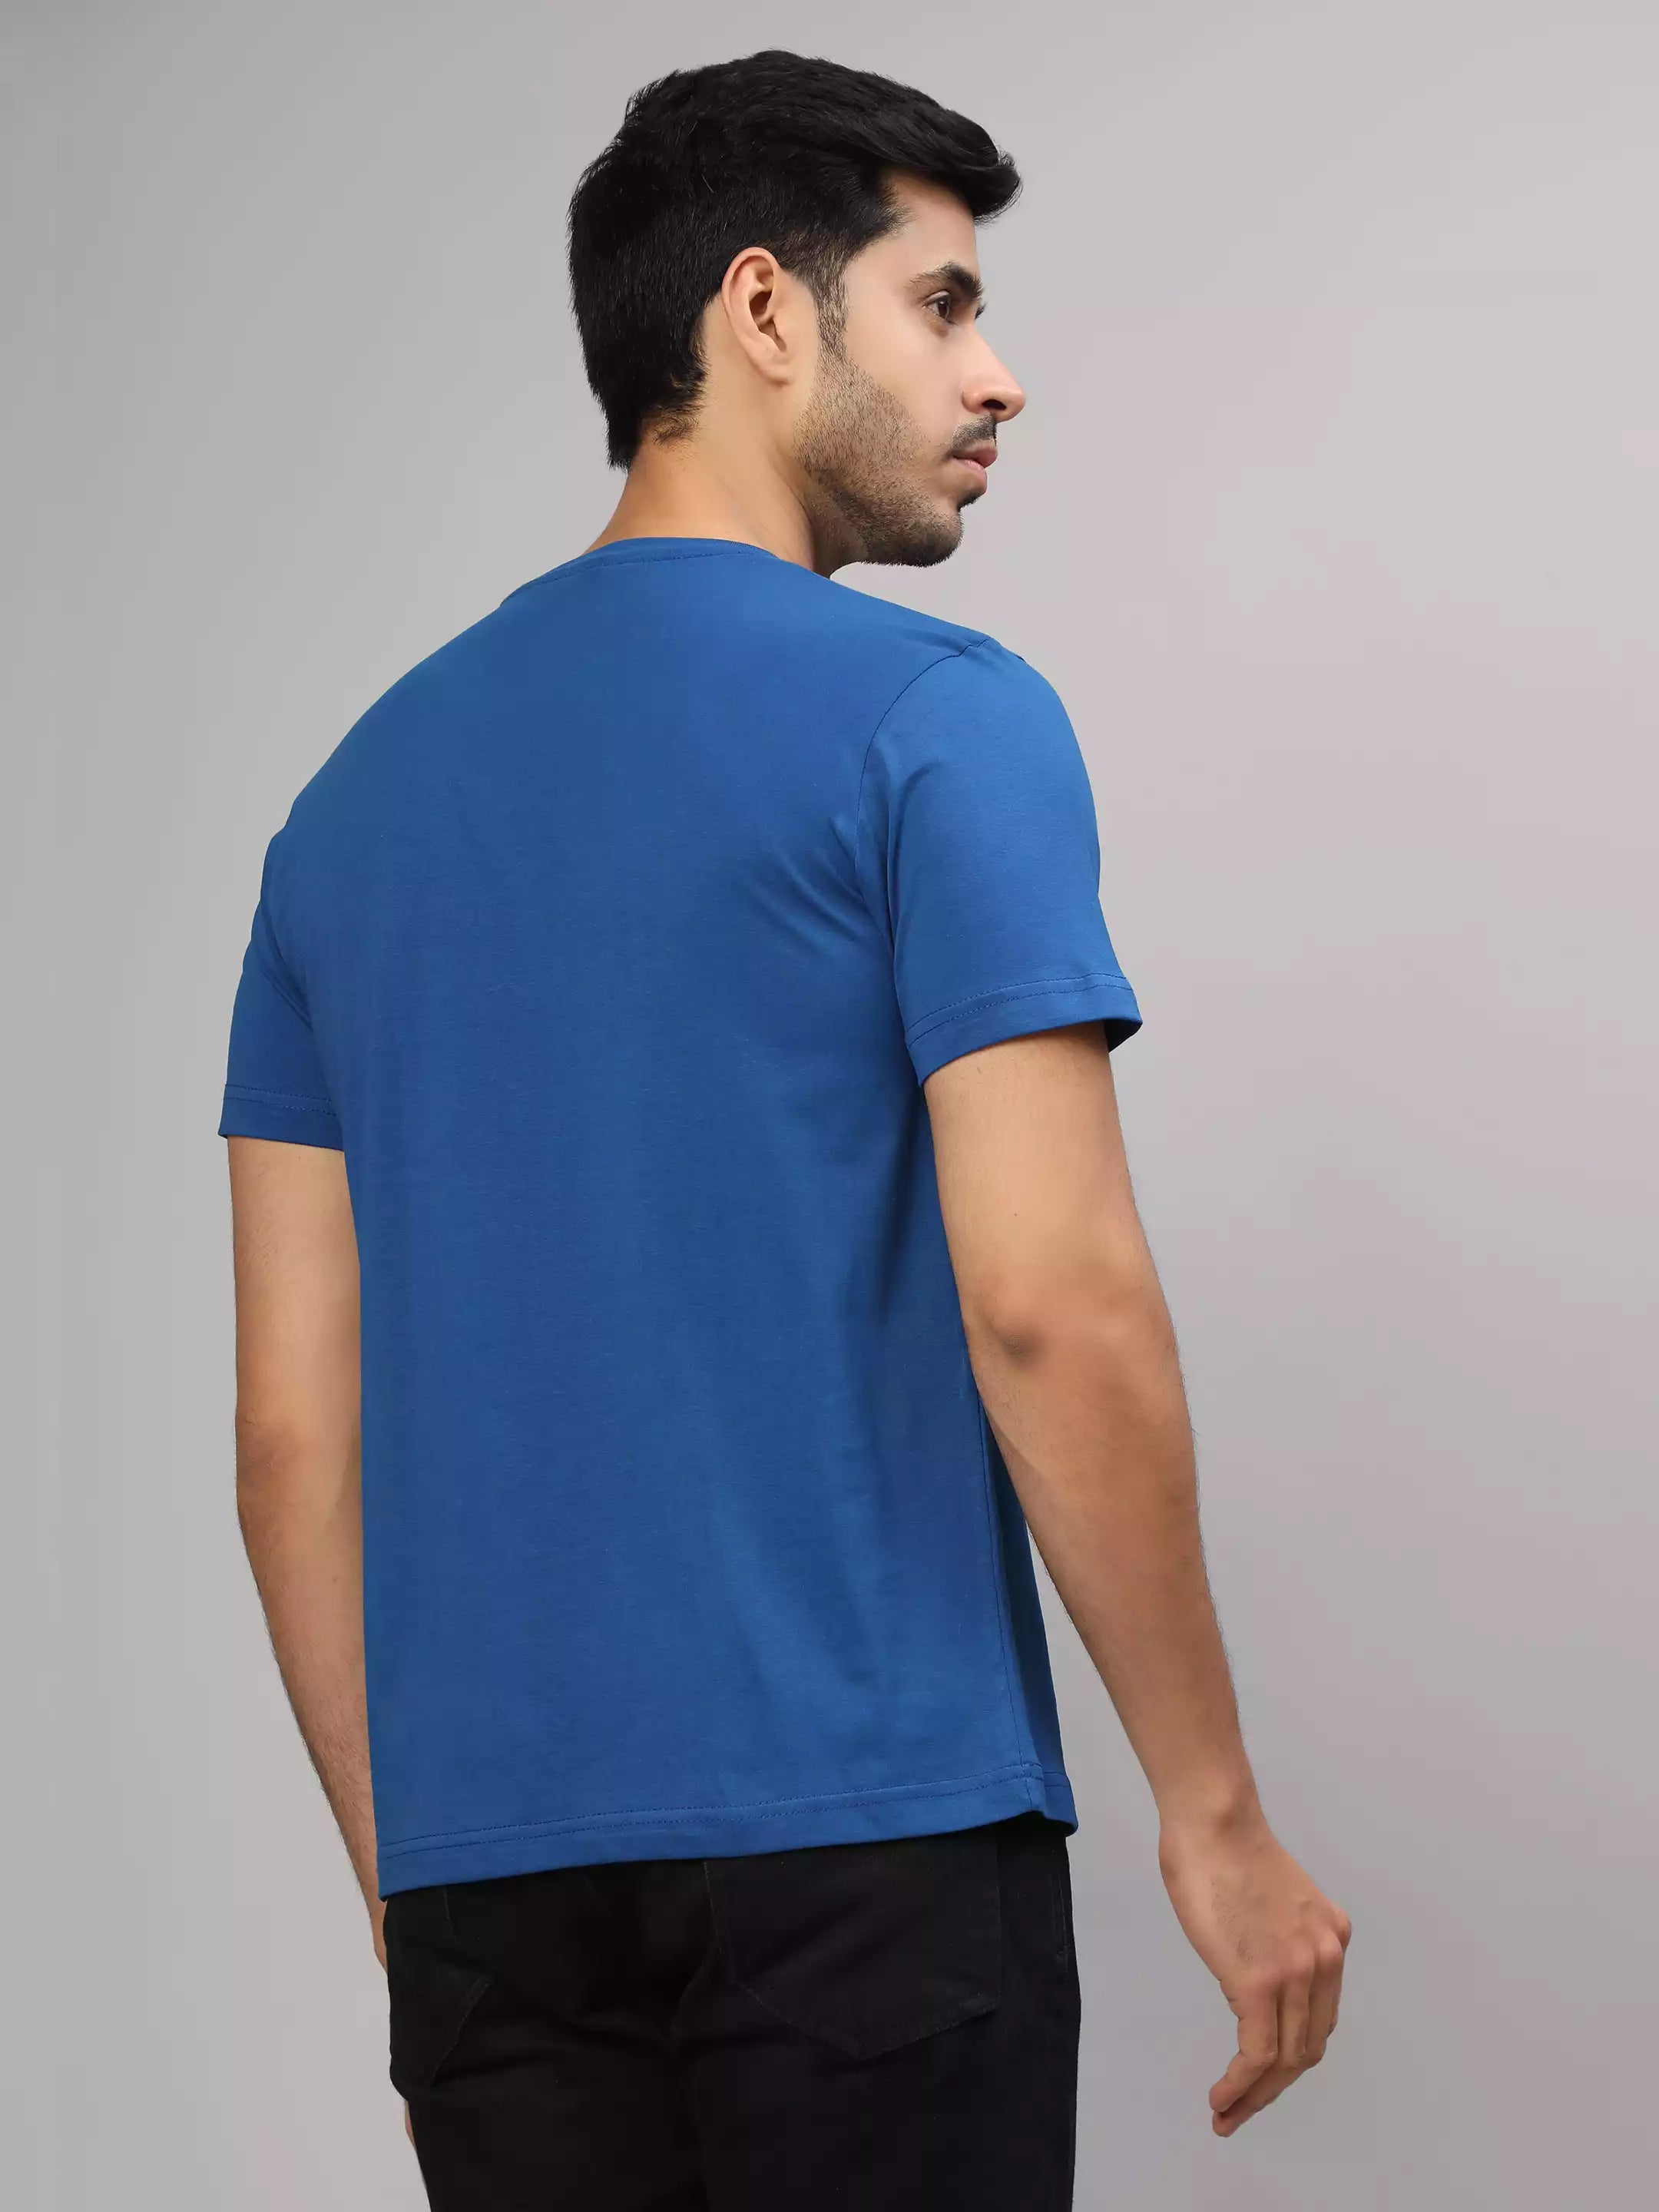 Don't Bro - Sukhiaatma Unisex Graphic Printed Royal Blue T-shirt